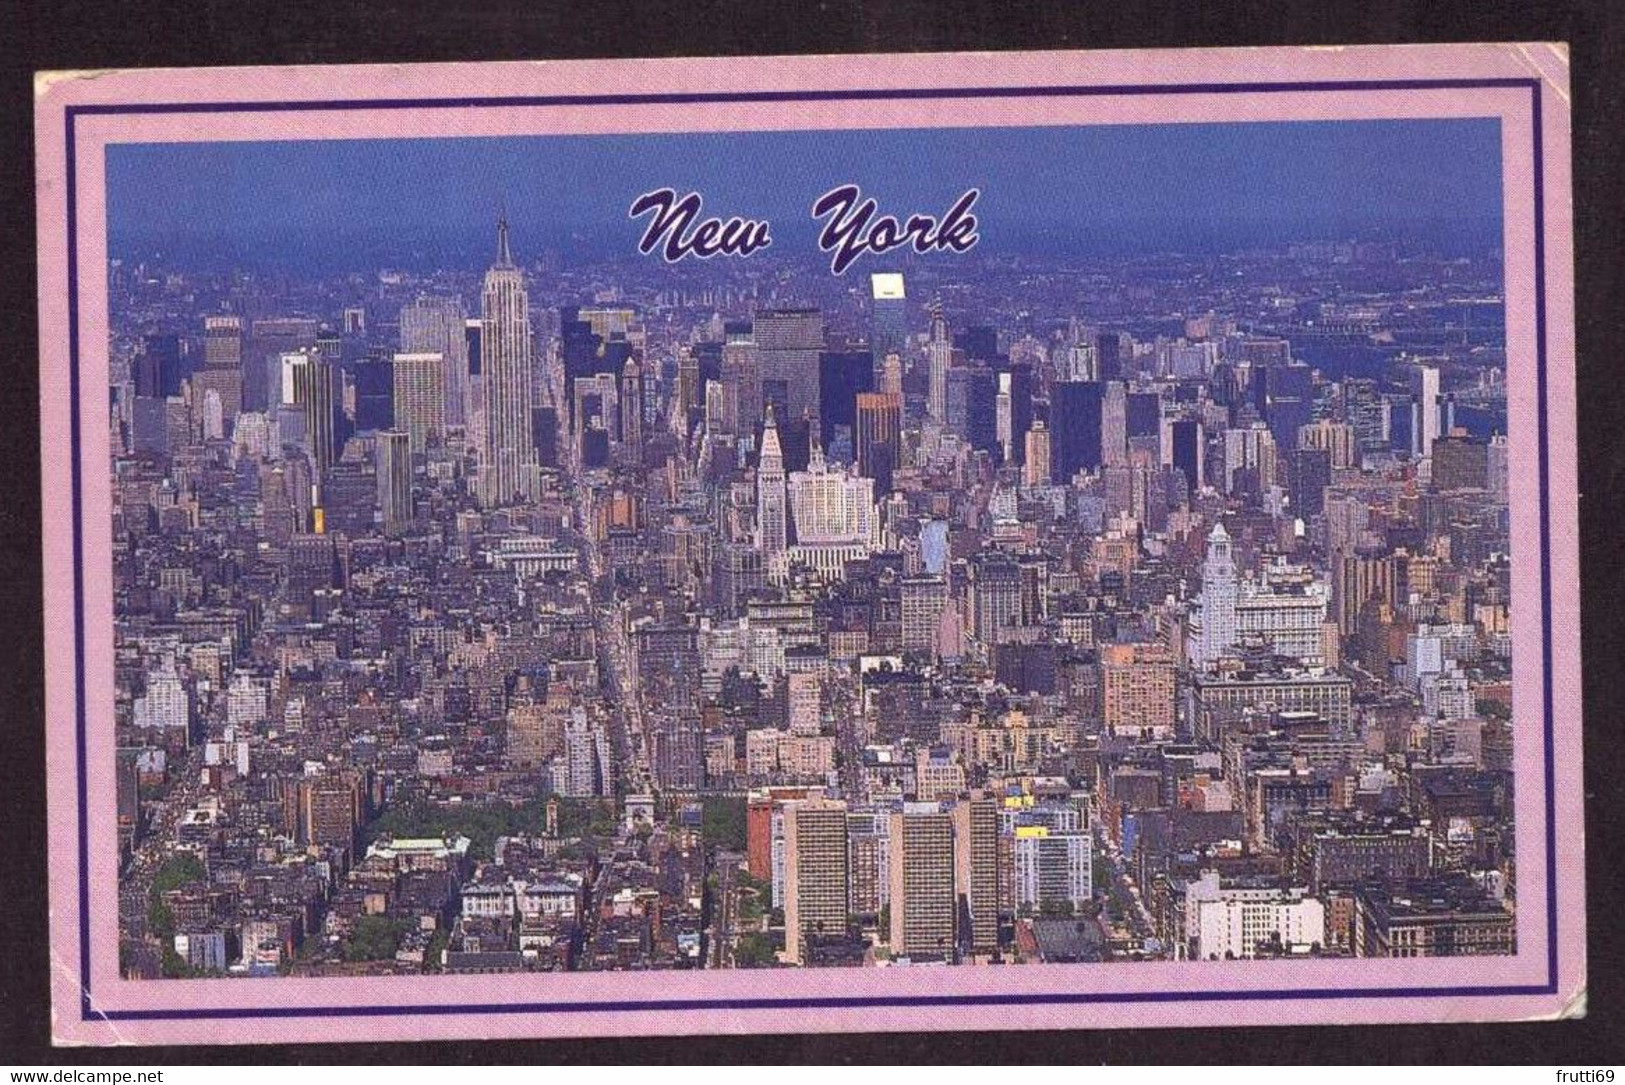 AK 078447 USA - New York City - Viste Panoramiche, Panorama